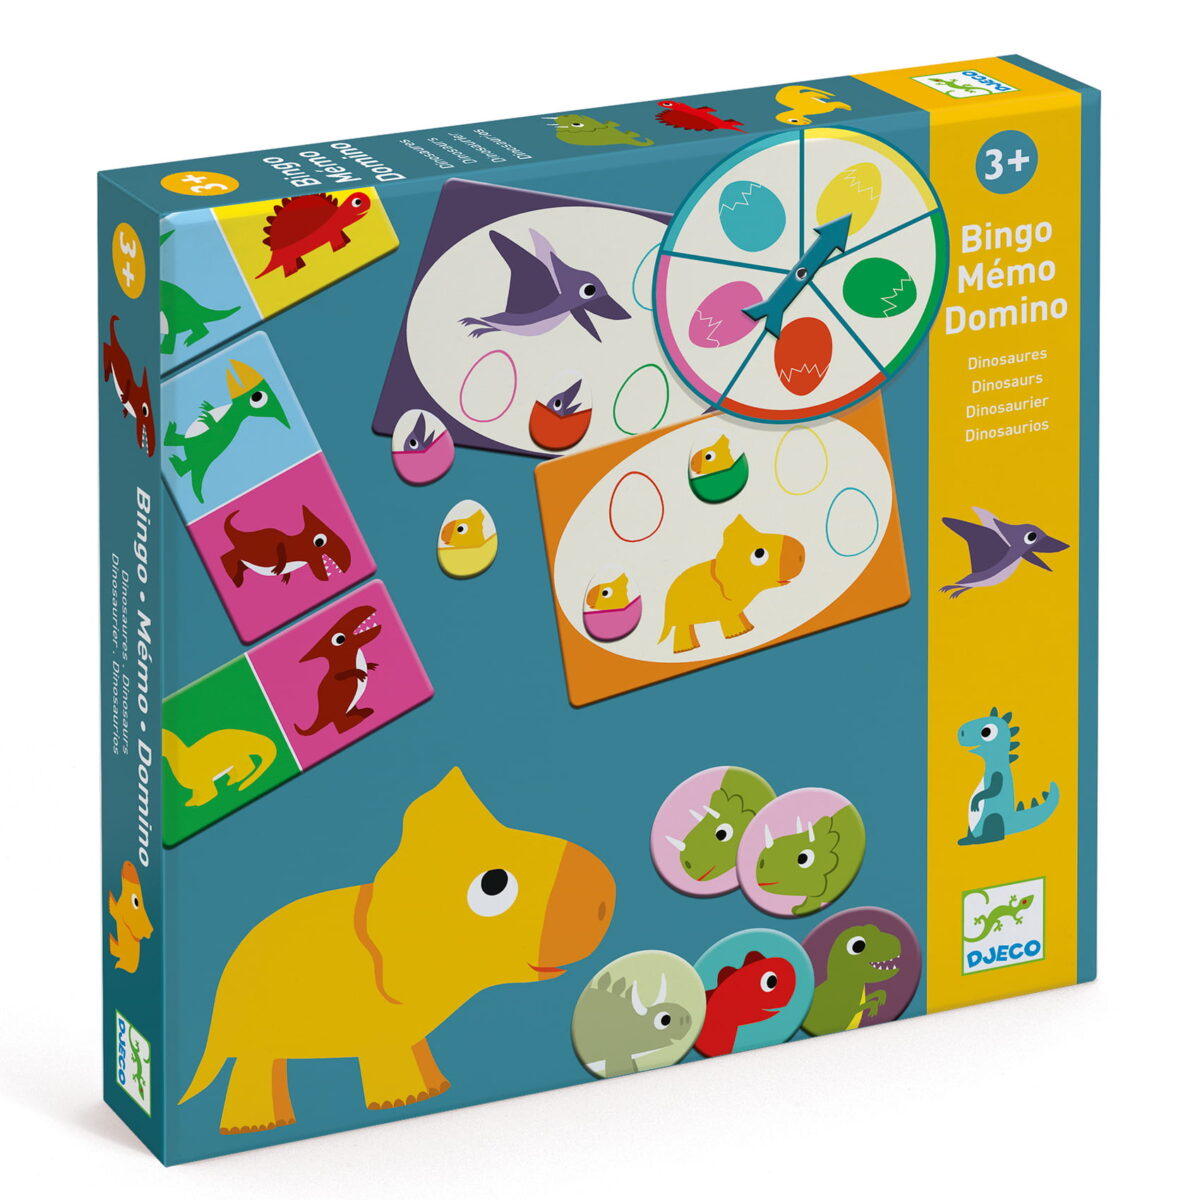 Djeco Gry Edukacyjne Bingo Memo Domino Dinozaury Dj08132 Dla Dzieci